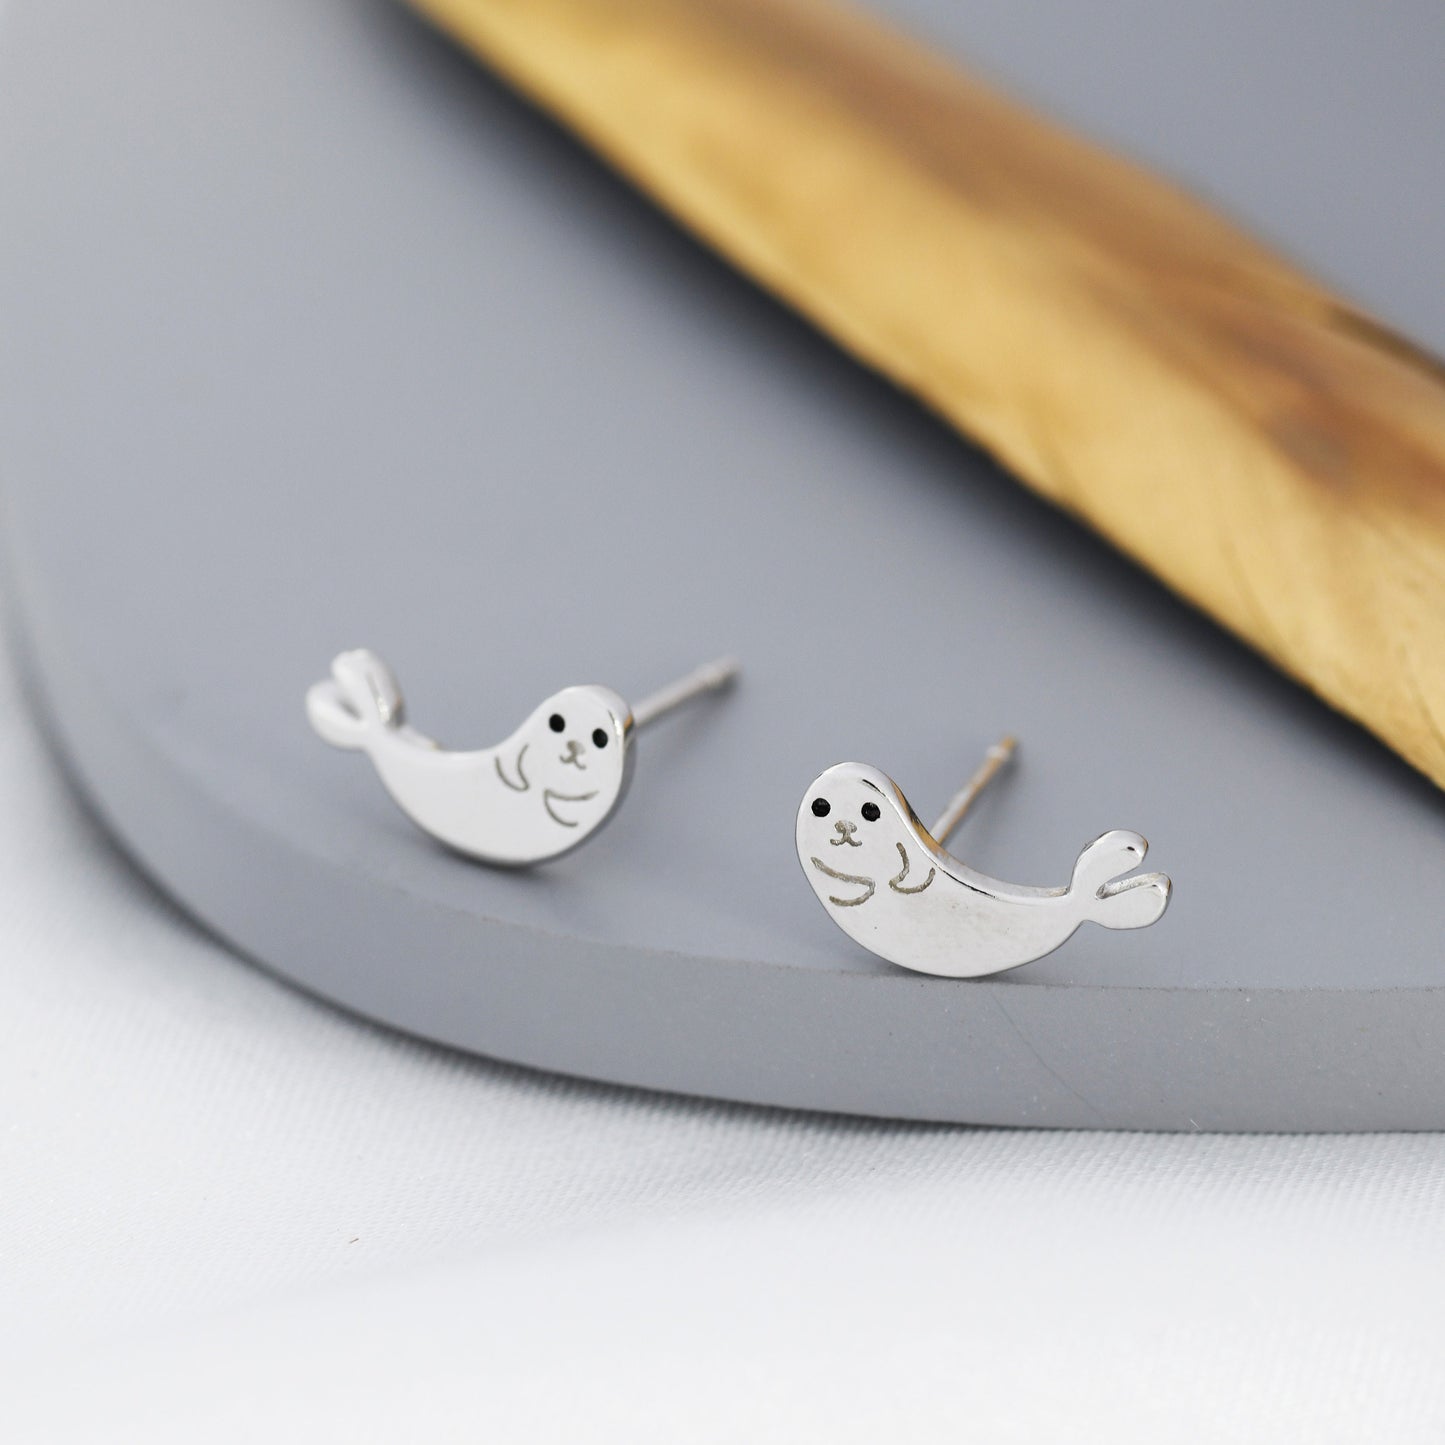 Seal Stud Earrings in Sterling Silver, Cute Baby Seal Earrings, Nature Inspired Animal Earrings